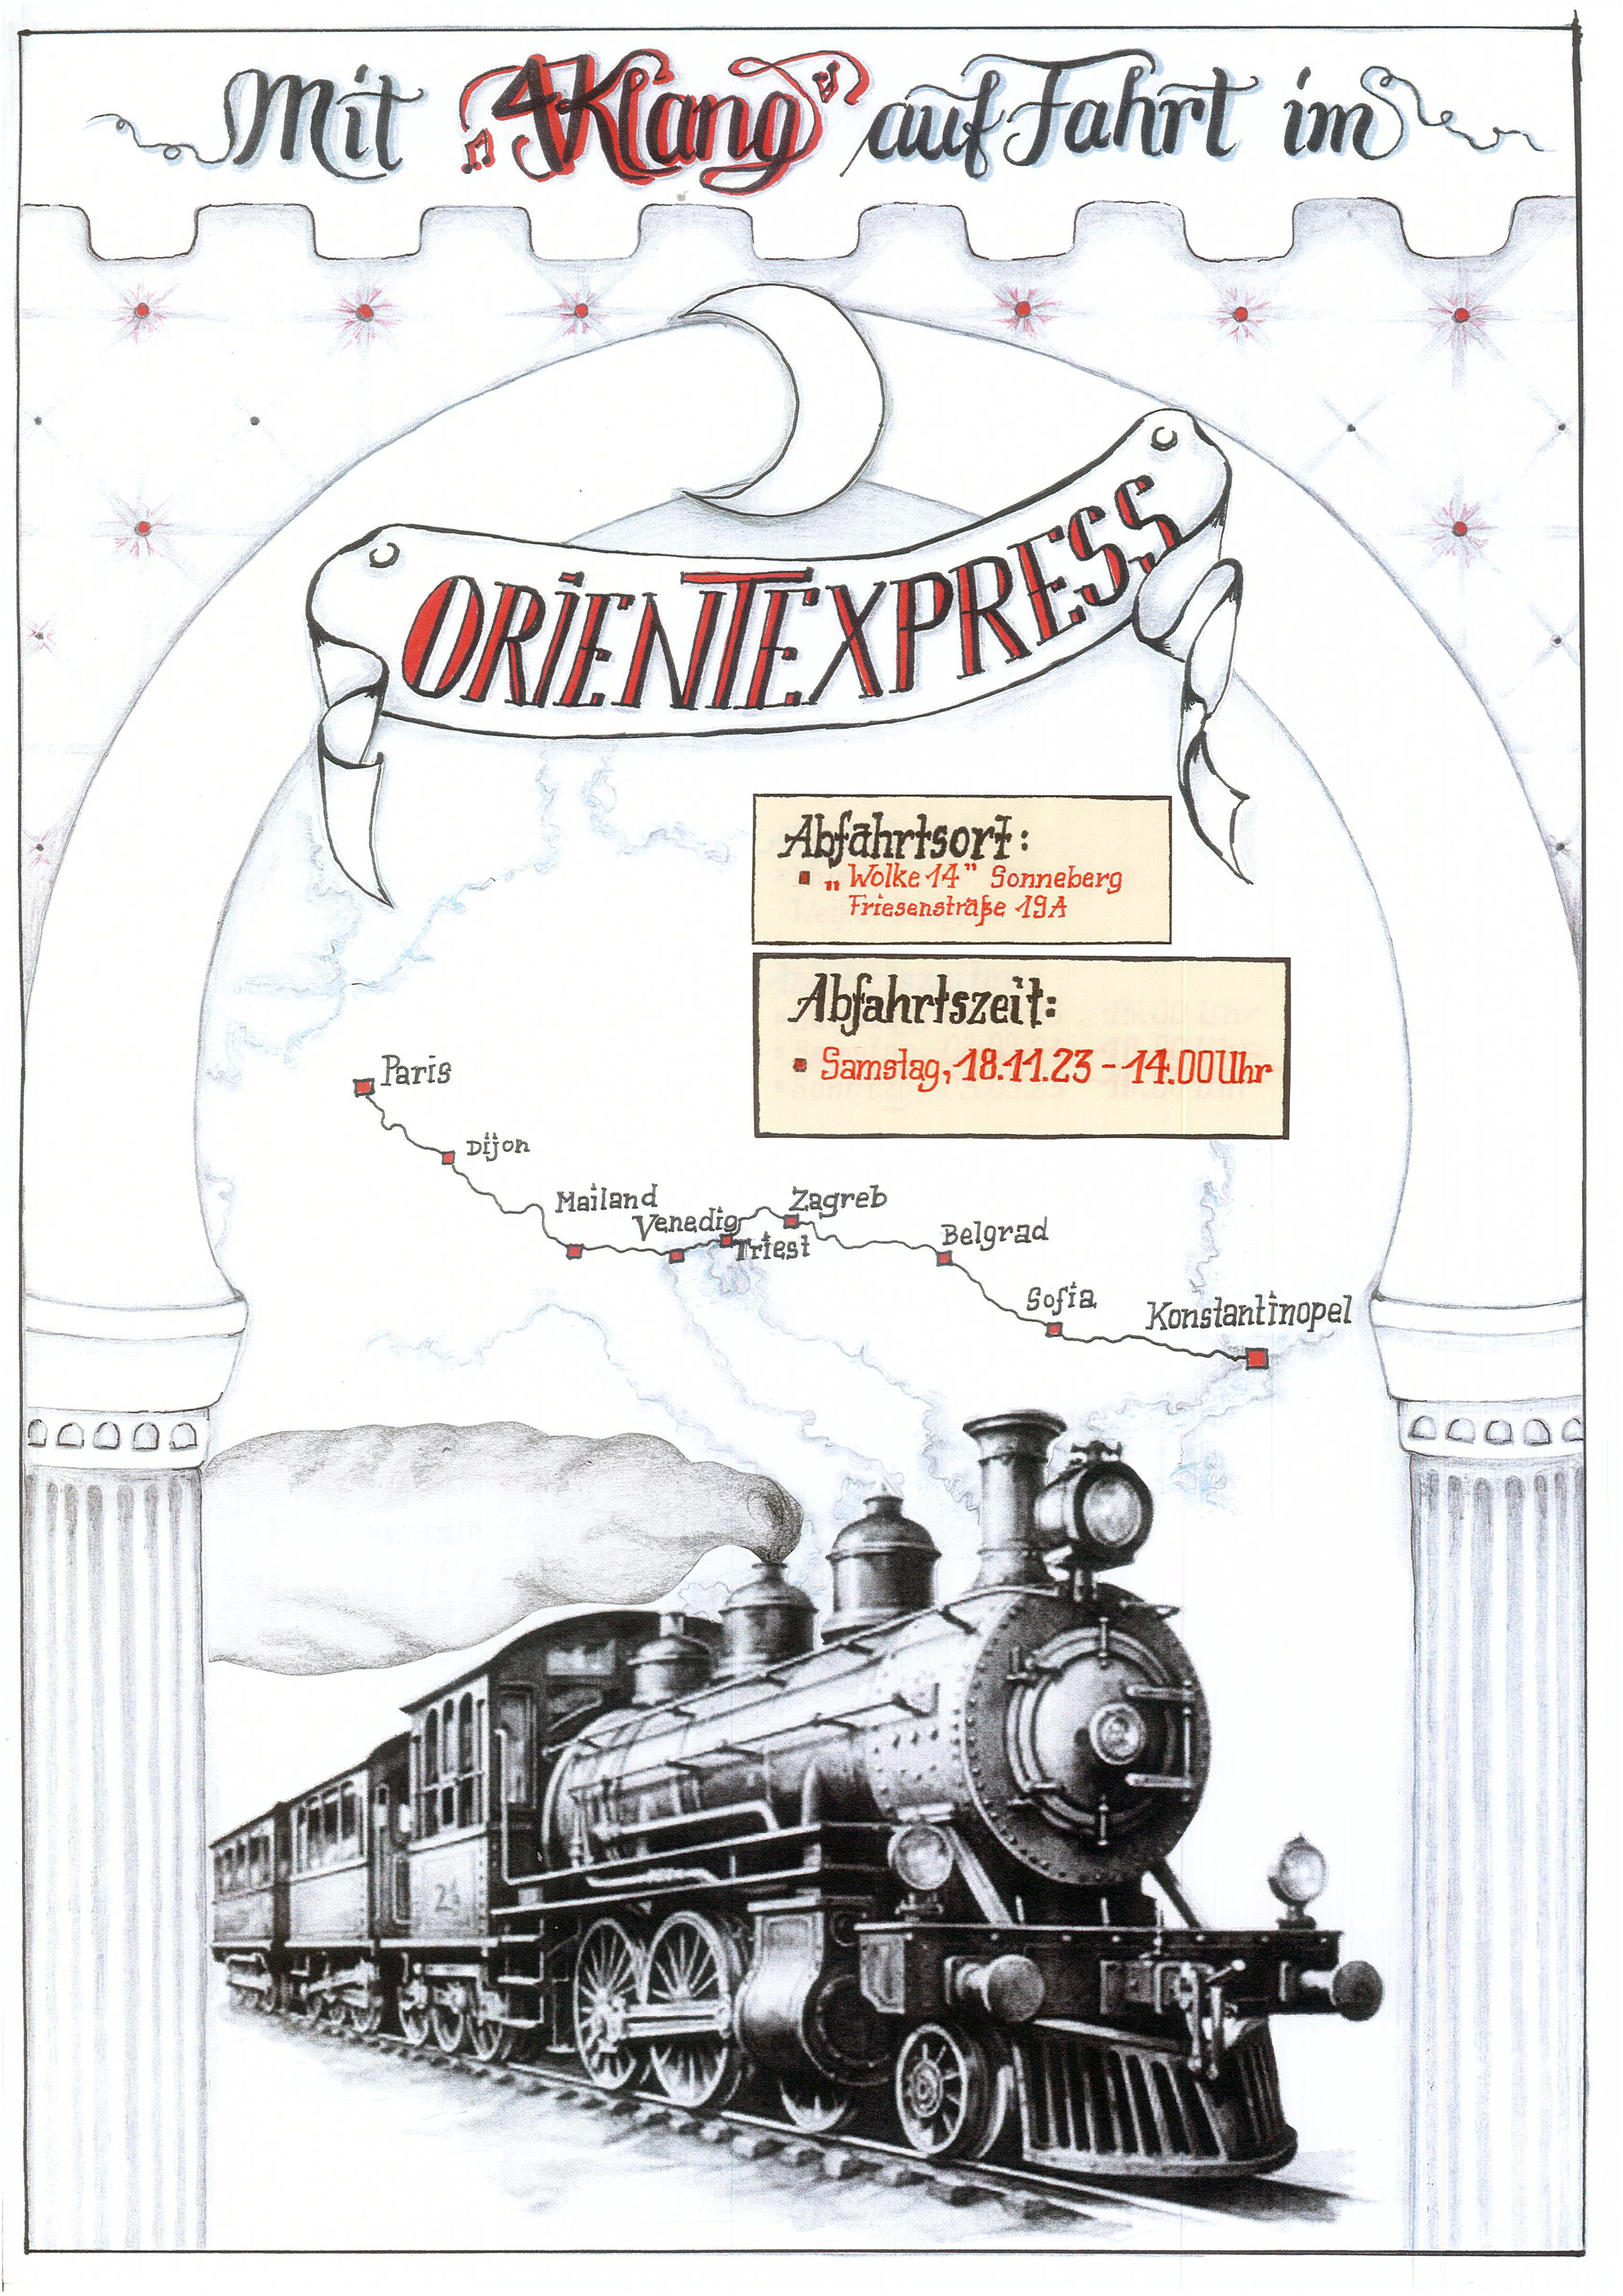 Eine Grafik zeigt eine Dampflok. Darüber steht: Mit Vierklang auf Fahrt im Orientexpress.